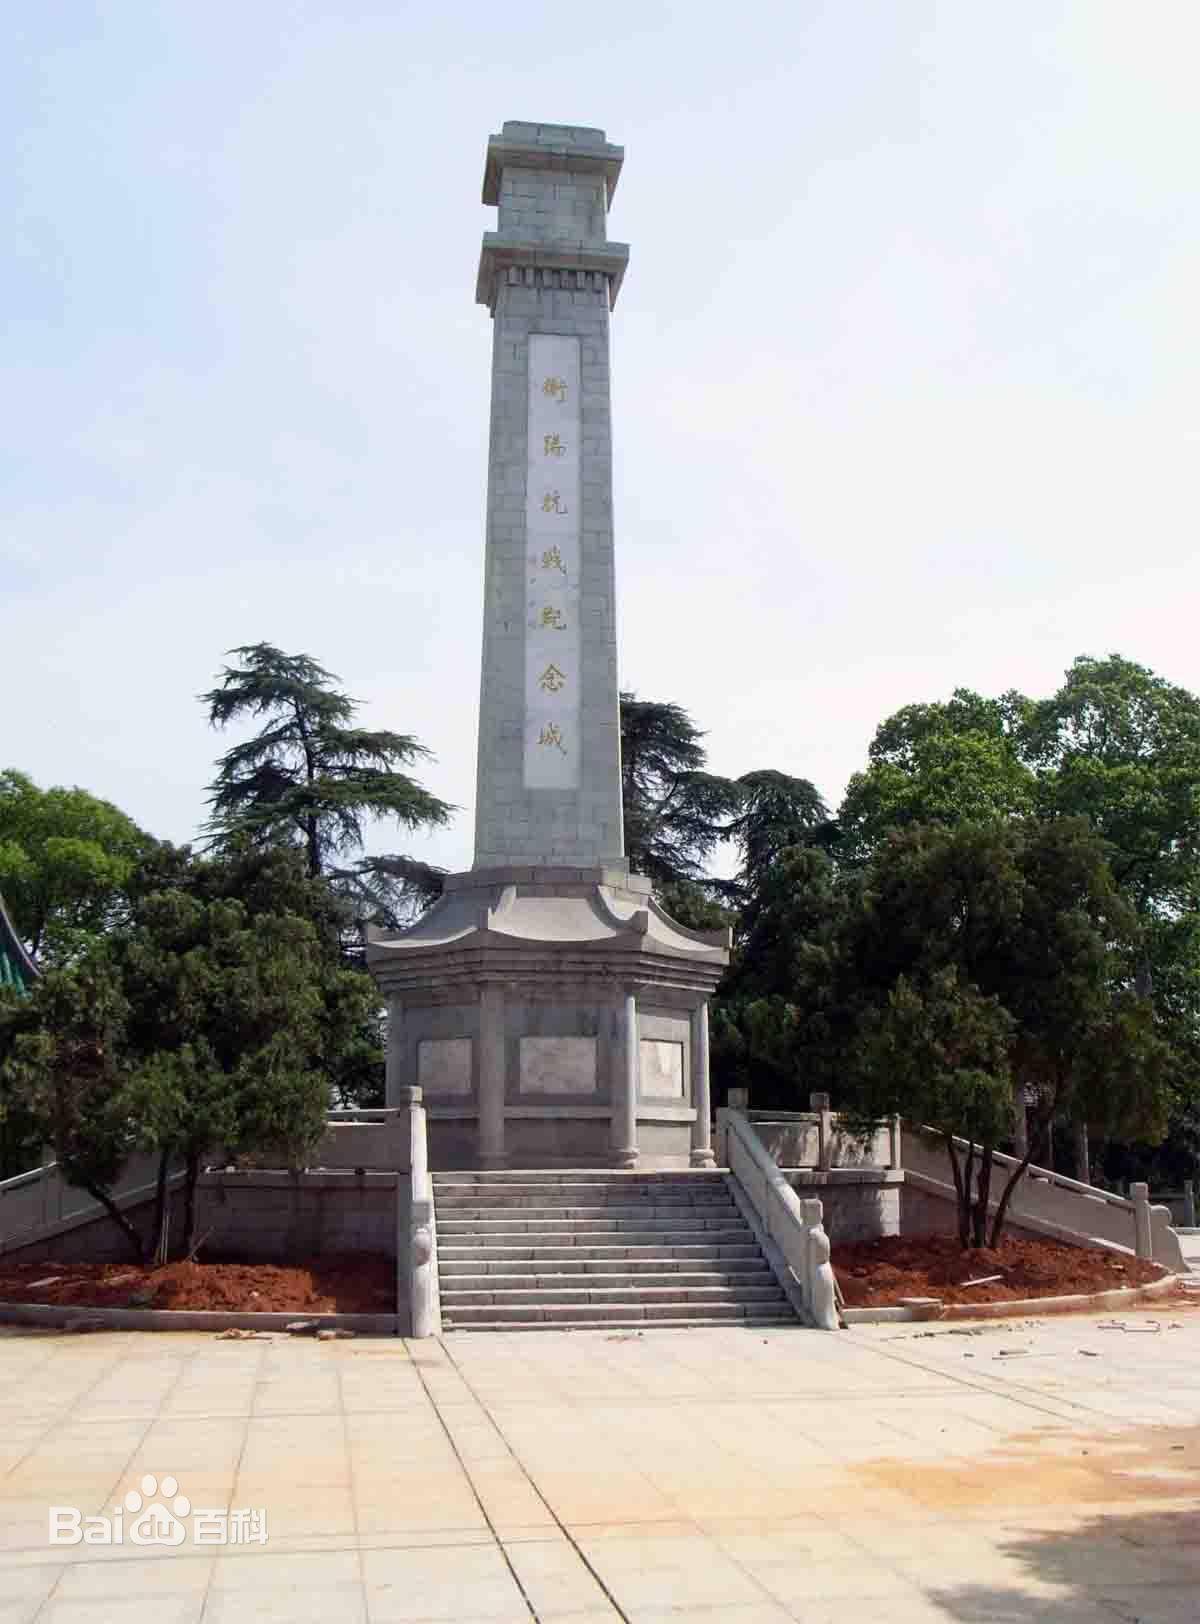 且部分设施先后遭到破坏,现保留或修复的主要有衡阳抗战纪念城碑,纪念